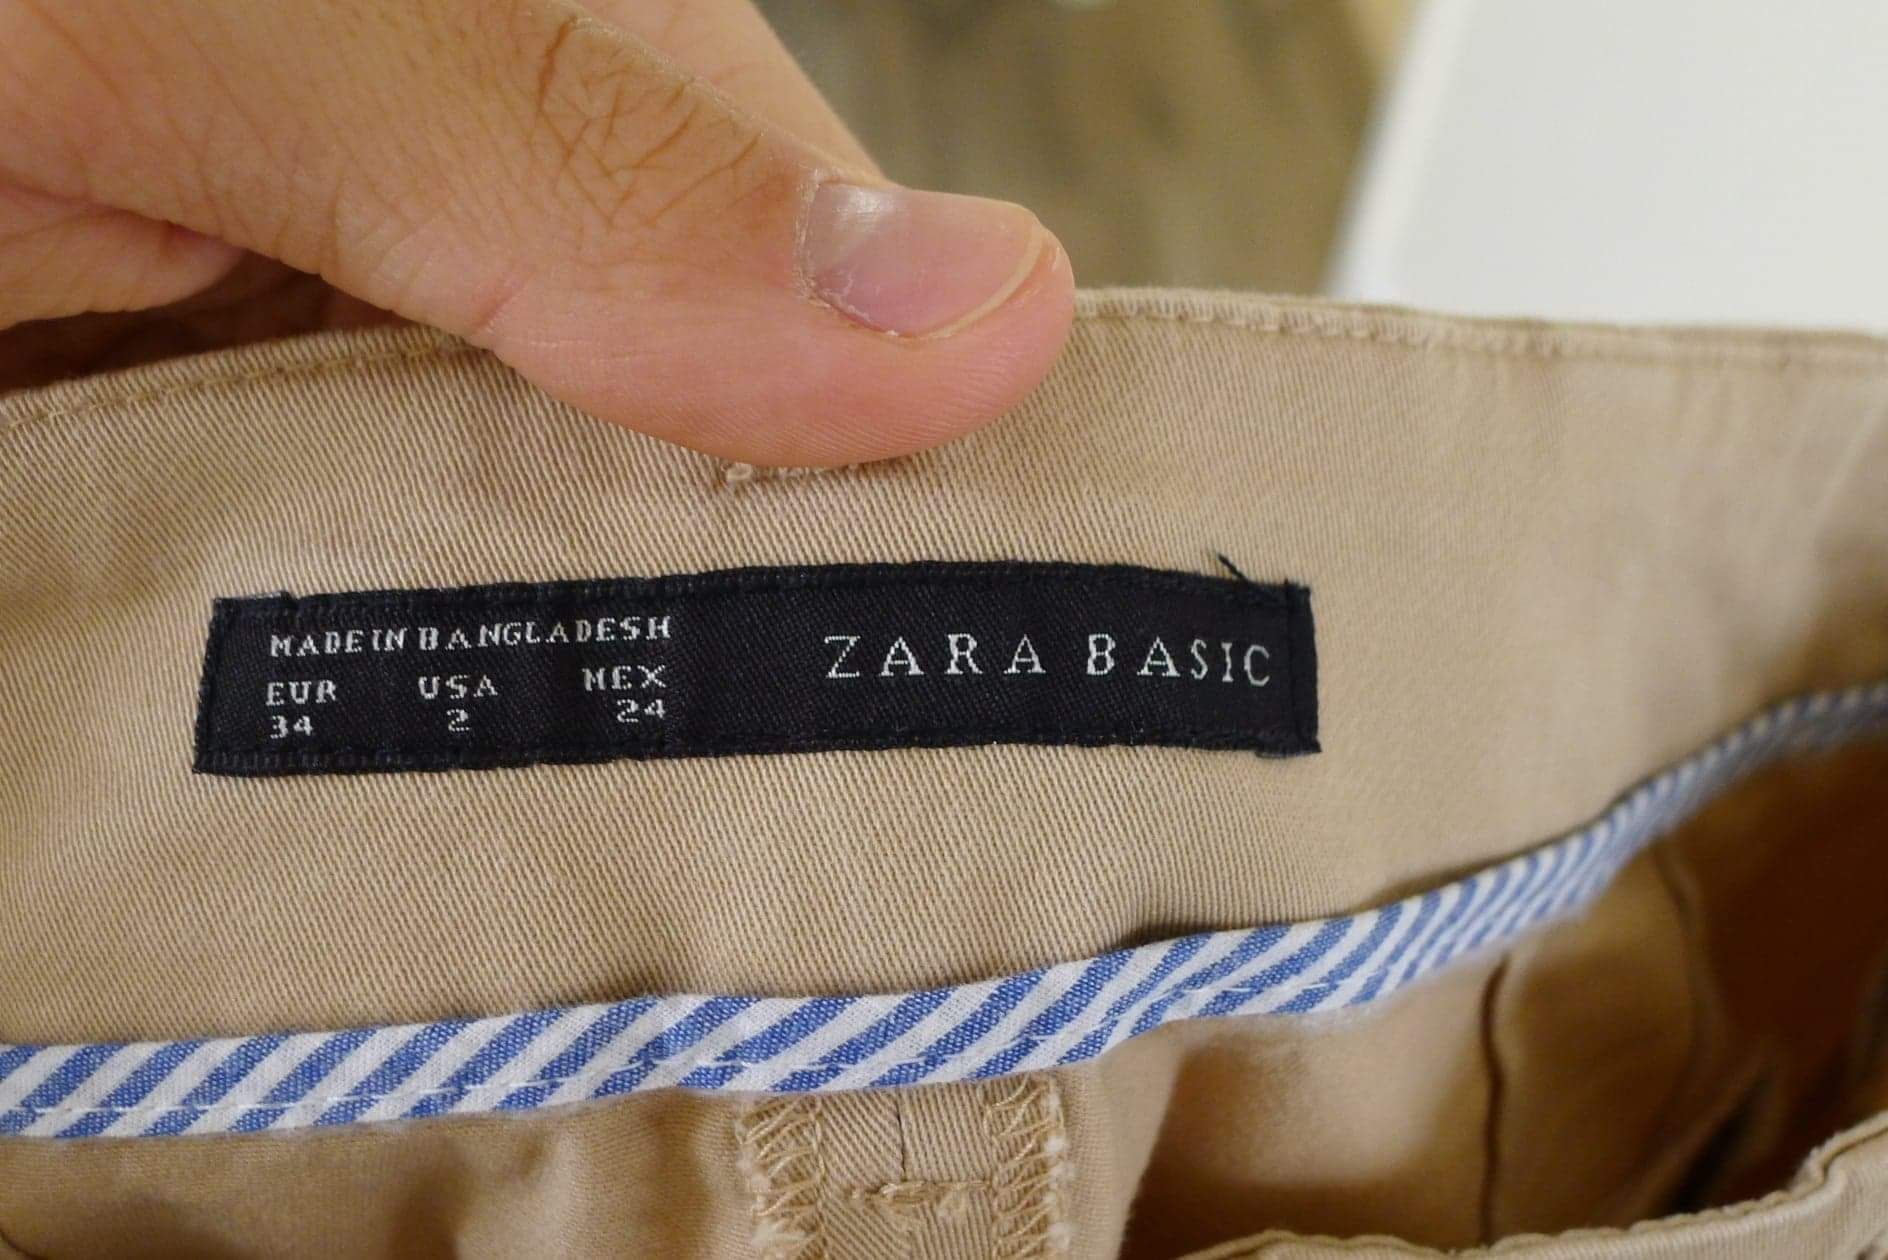 Zara Basic cygaretki spodnie beżowe R.34 XS JAK NOWE